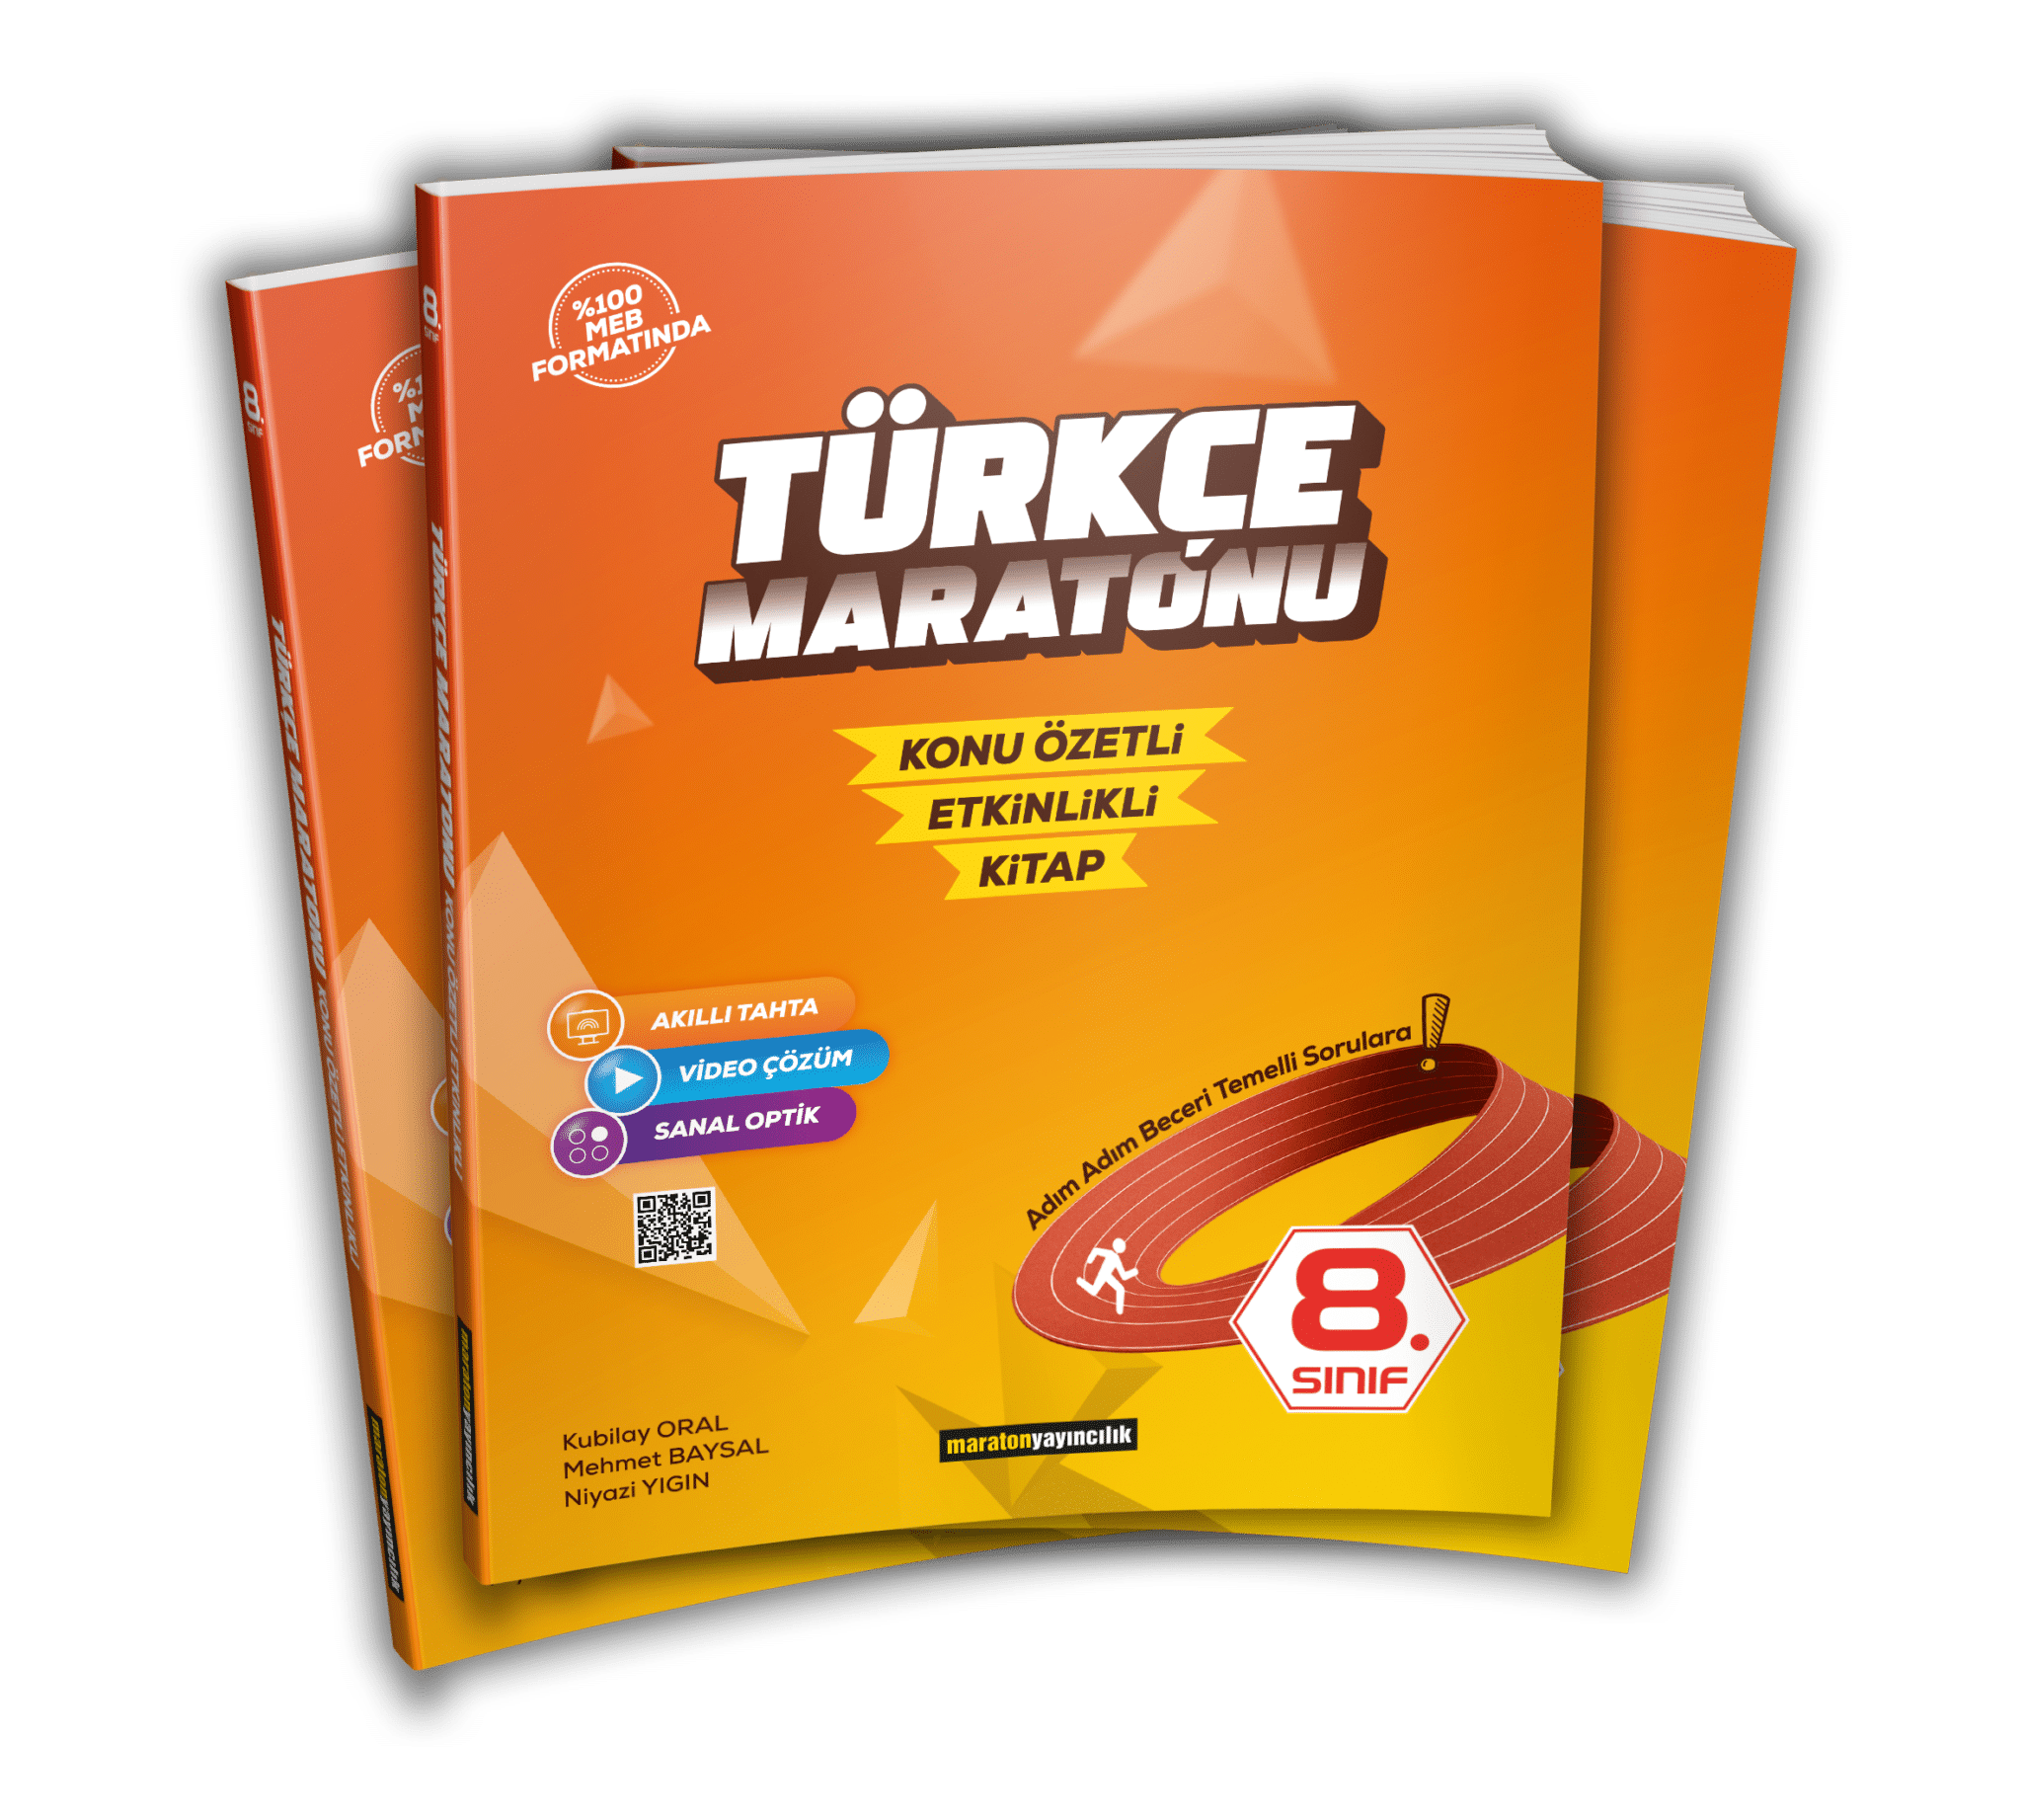 8. Sınıf Türkçe Maratonu - Konu Özetli & Etkinlikli Kitap